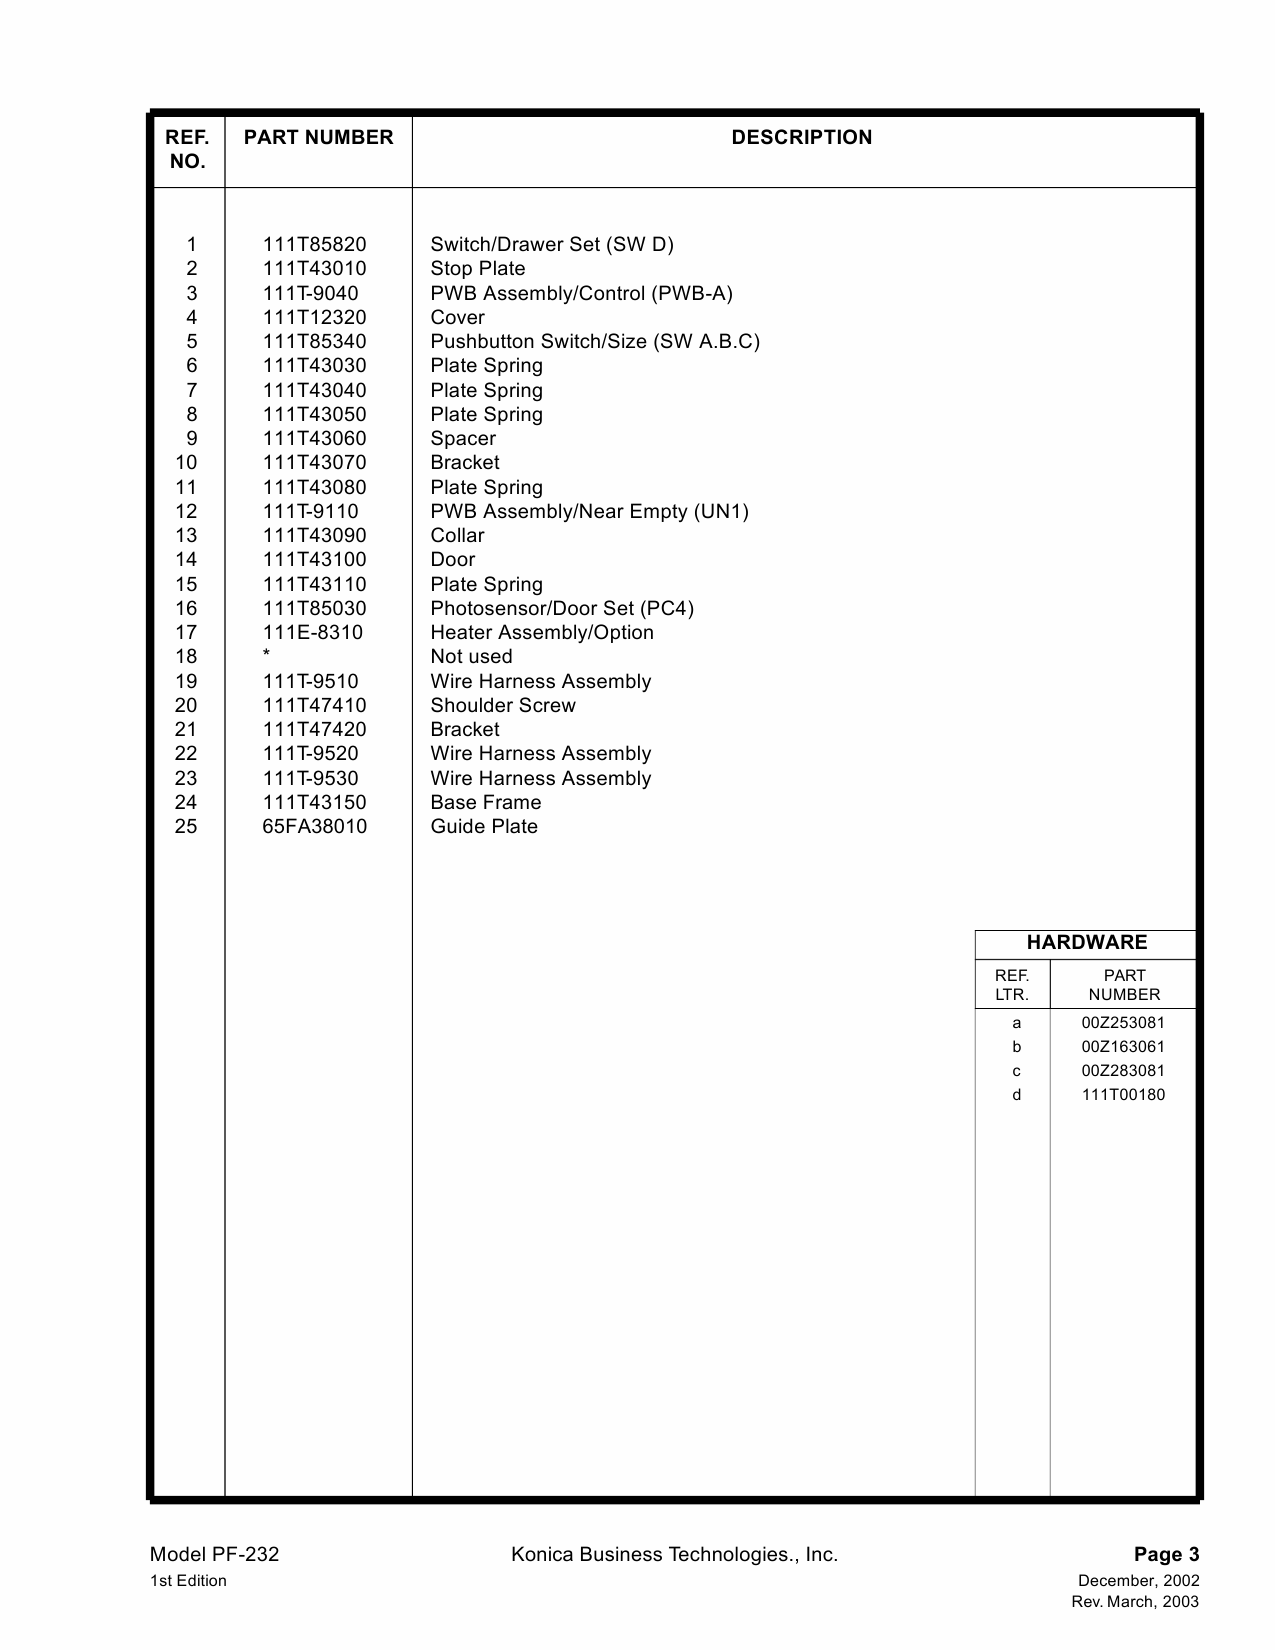 Konica-Minolta Options PF-232 Parts Manual-2